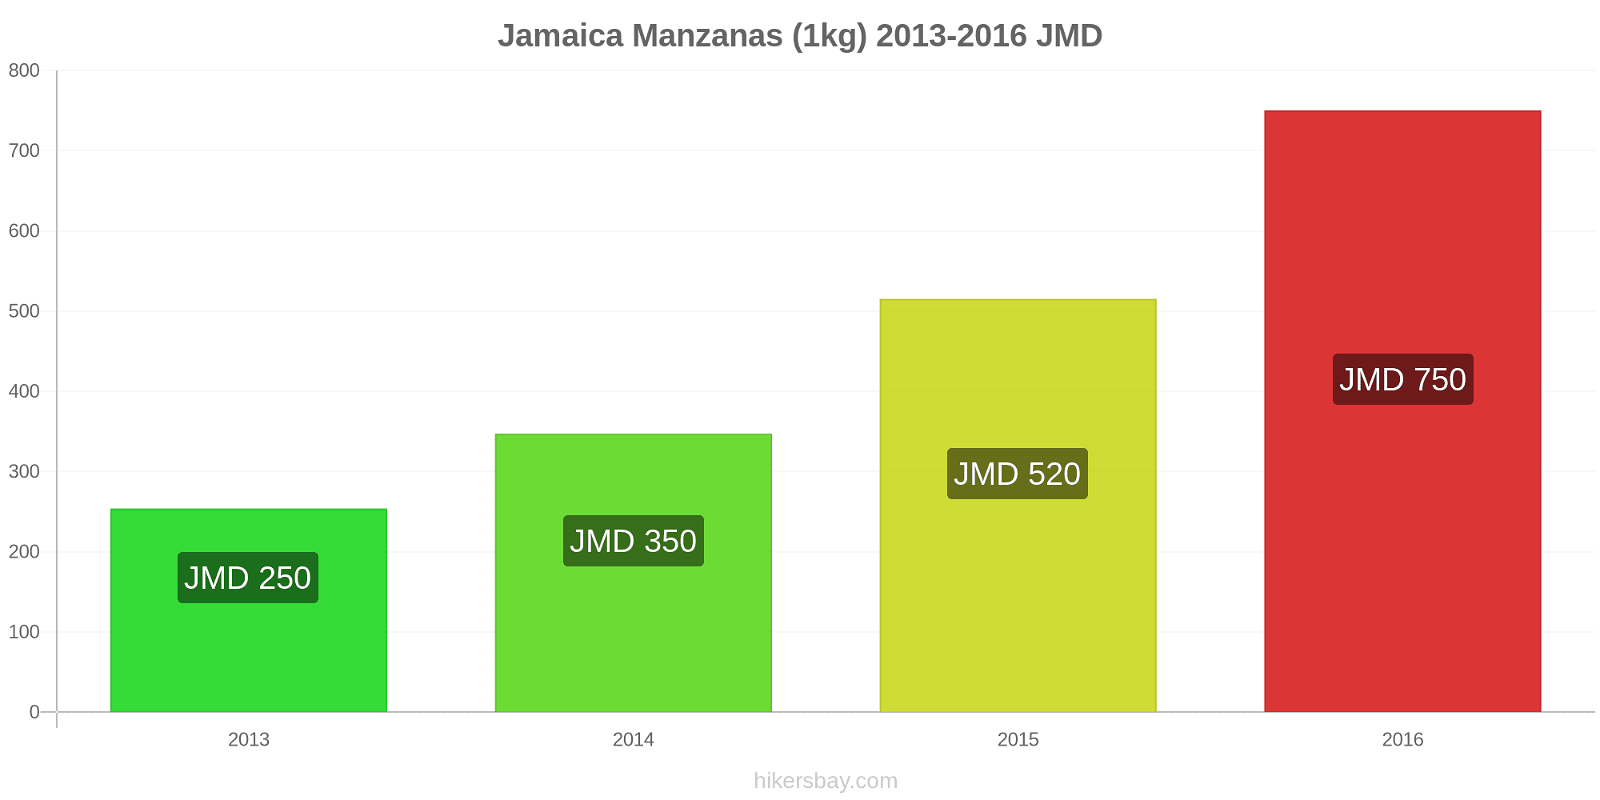 Jamaica cambios de precios Manzanas (1kg) hikersbay.com